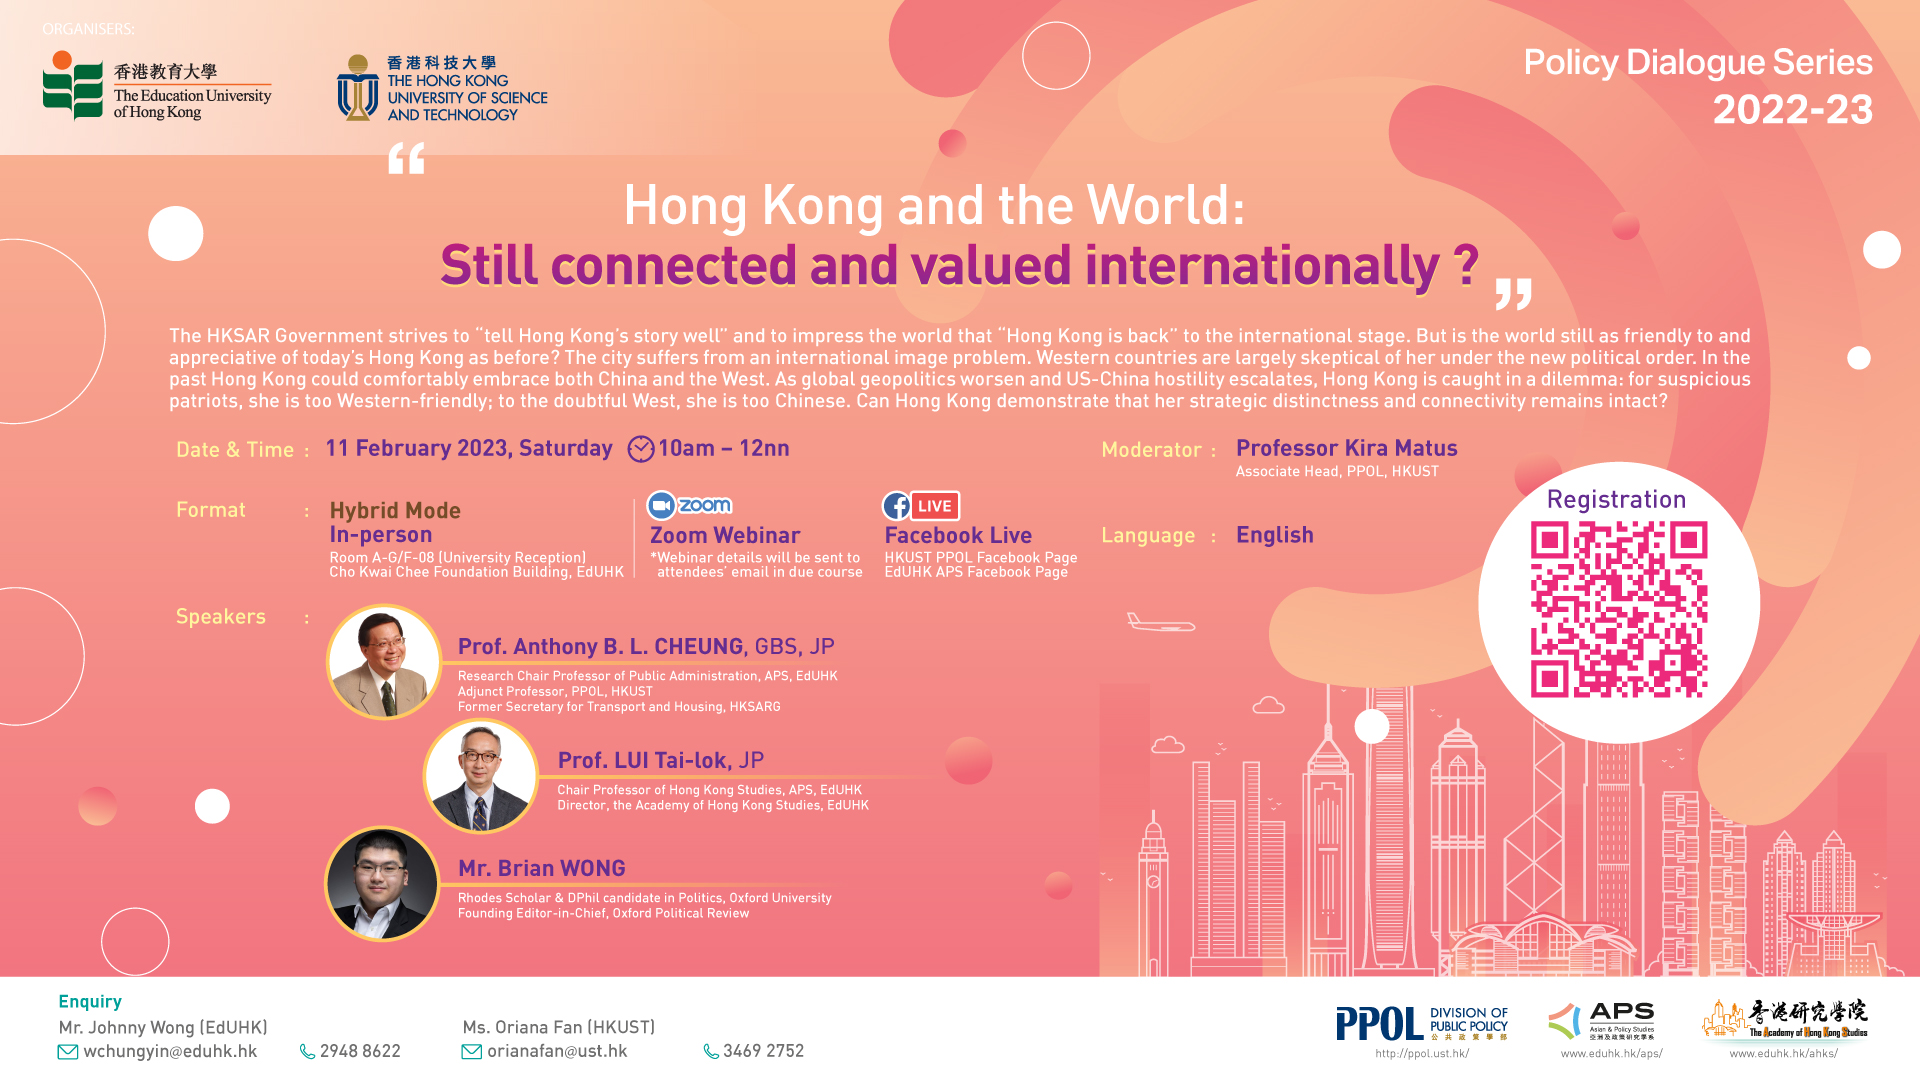 香港在全球的連繫性及國際價值